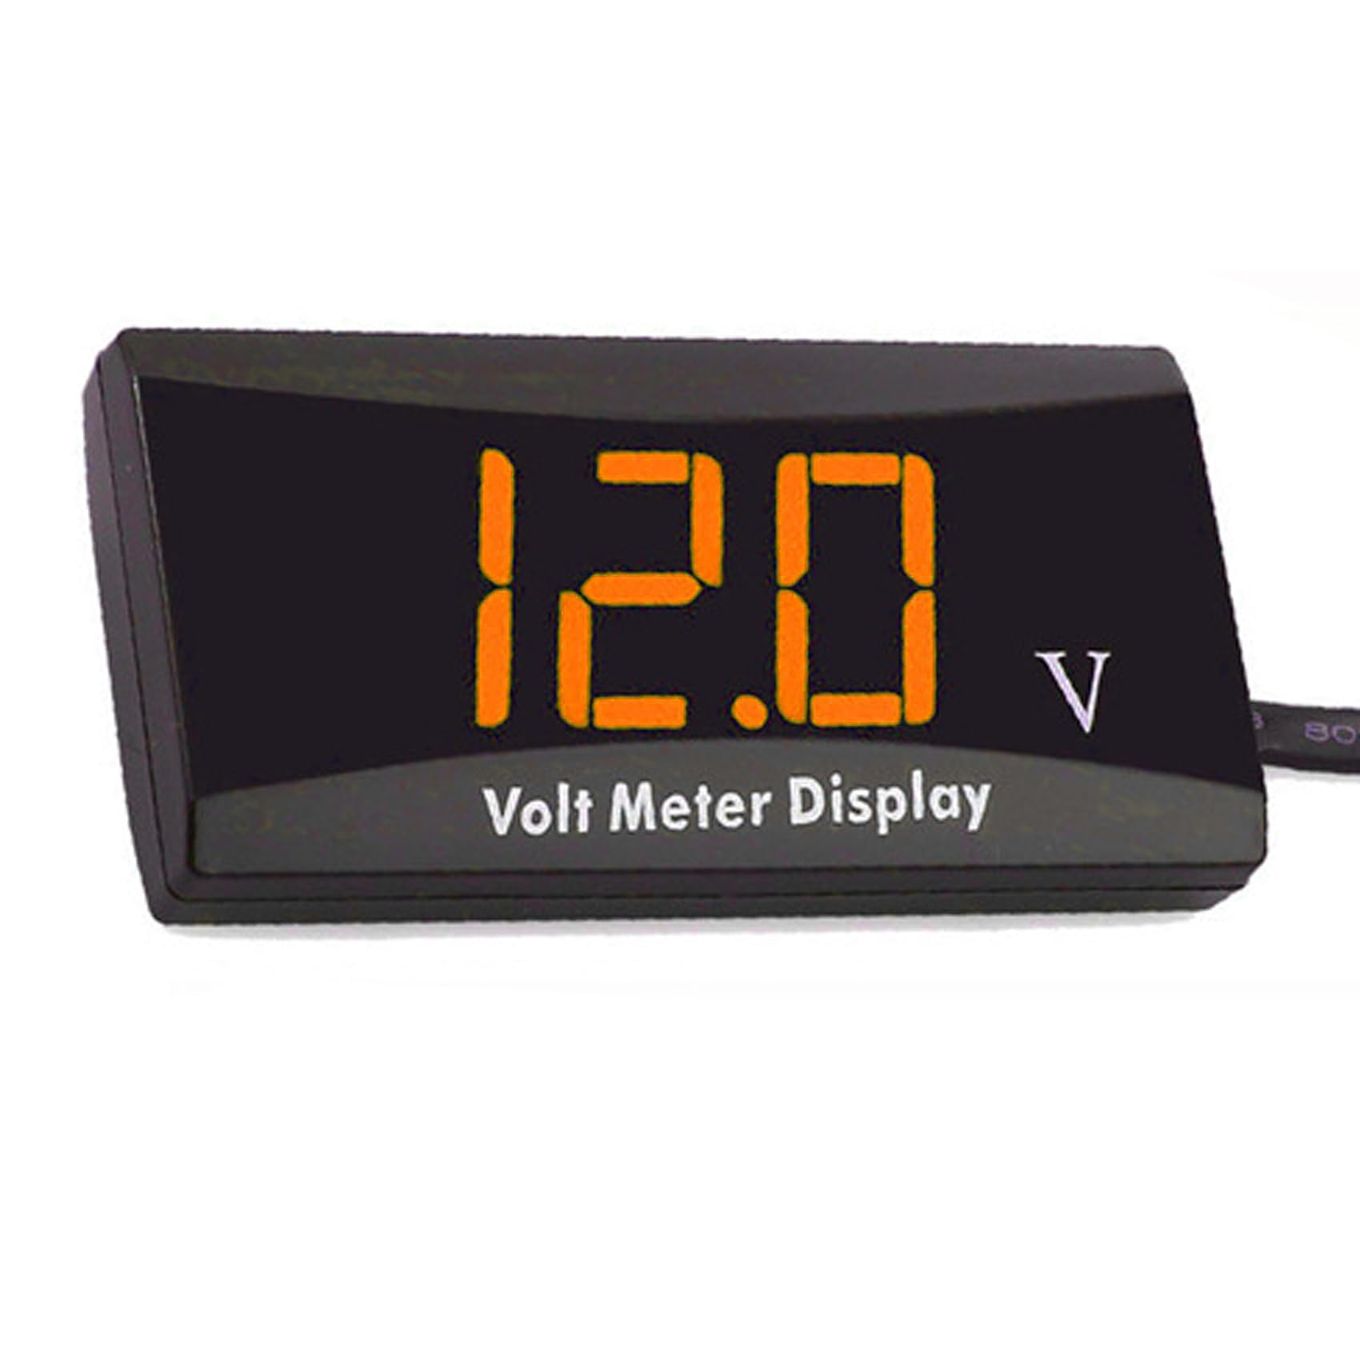 YFFSFDC バイク 電圧計 12V デジタル電圧計 車両電圧計 防水 コンパクト LED表示パネルメーター オートバイ スクーター用 小型電圧計 低電圧警報機能付き (オレンジ）